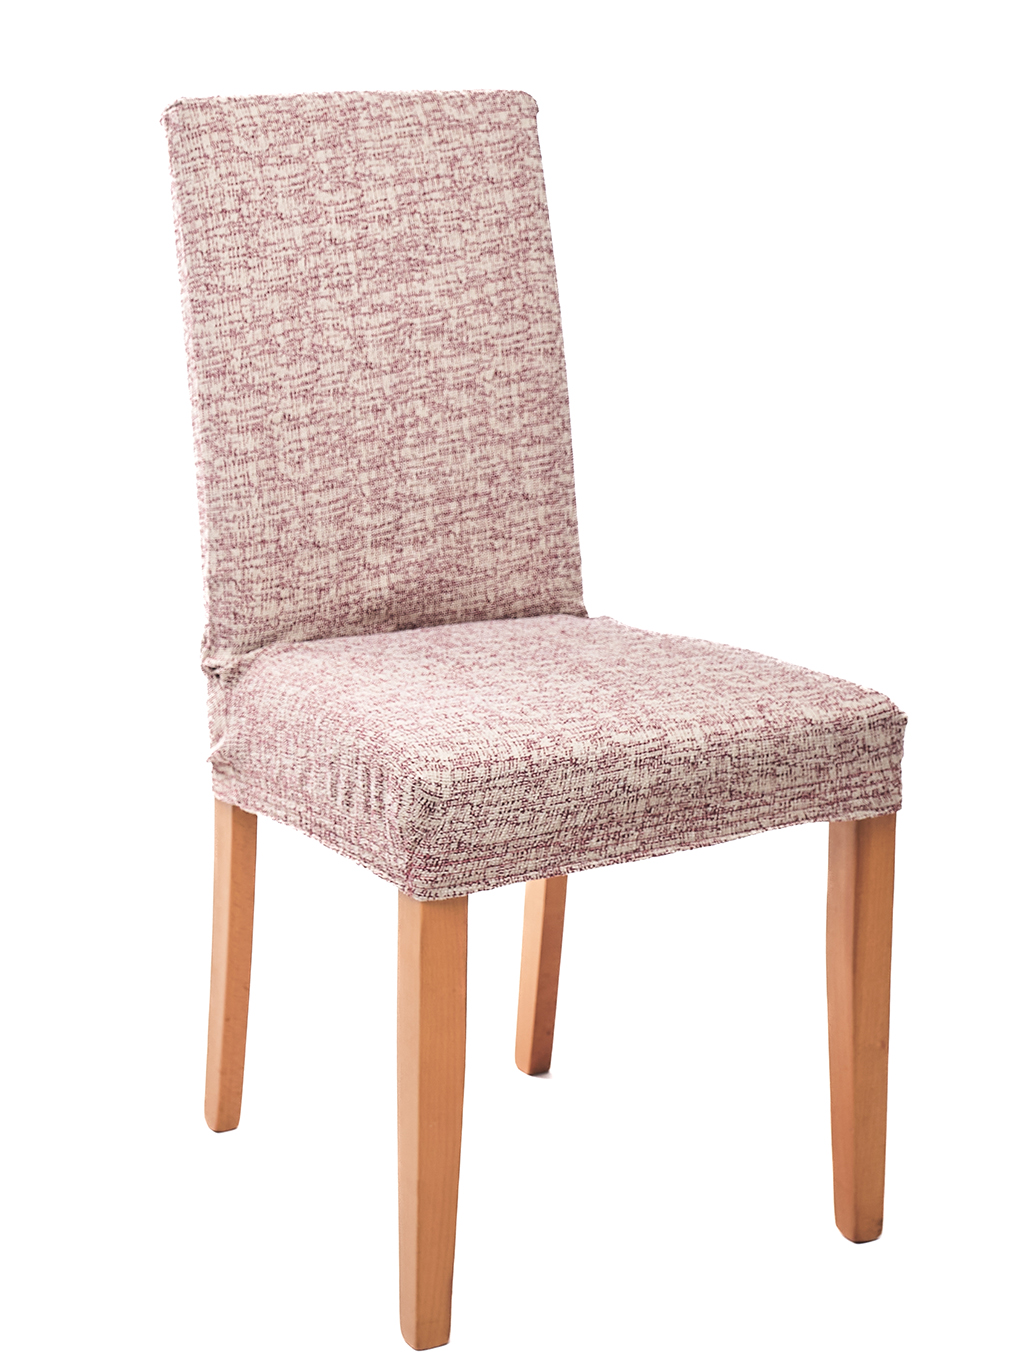 Komashop Potah na židli CYPRUS Barva: béžovo-bordová